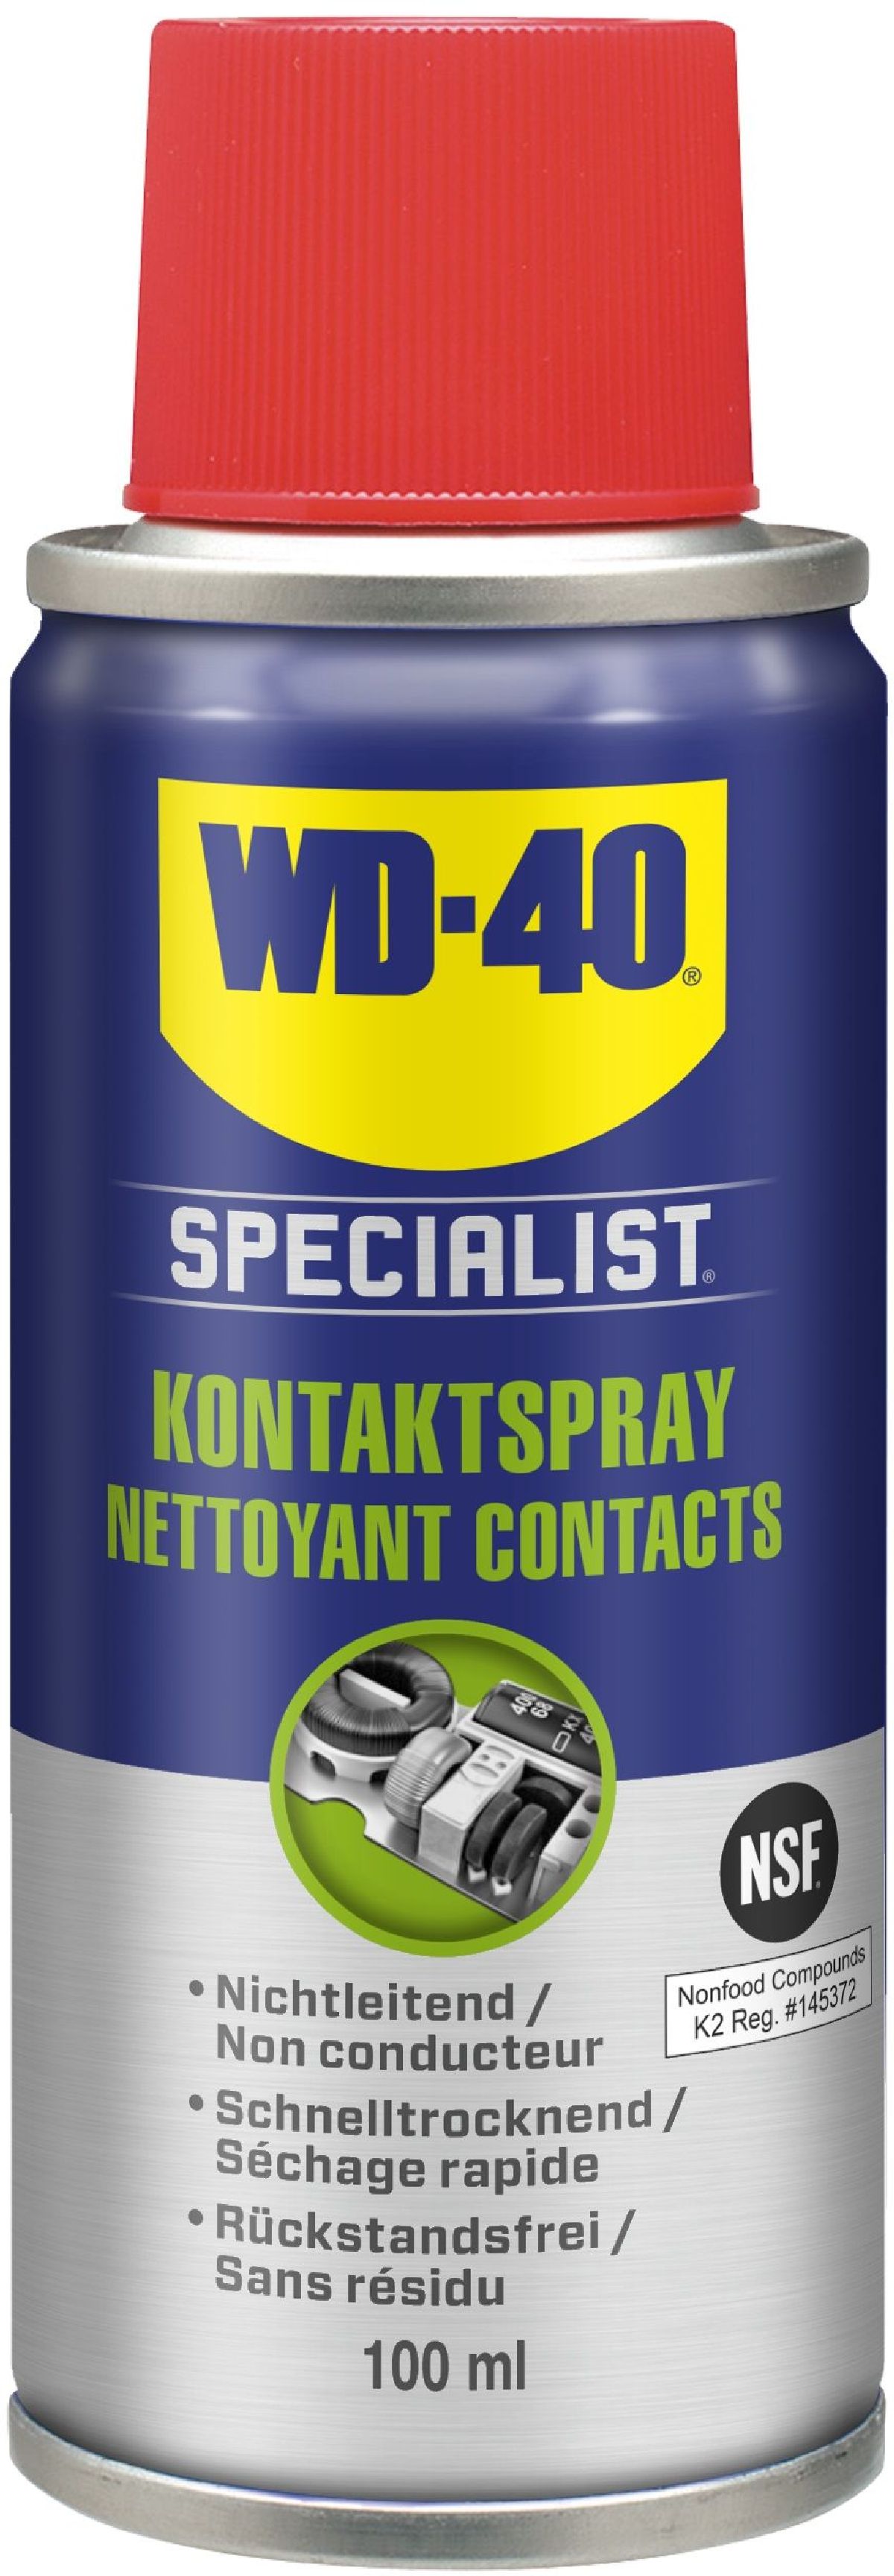 Gesamtsortiment / Schmiermittel + Chemie + Handpflege / WD-40 / WD-40  Specialist / WD-40 Specialist - Krautli (Schweiz) AG - Shop